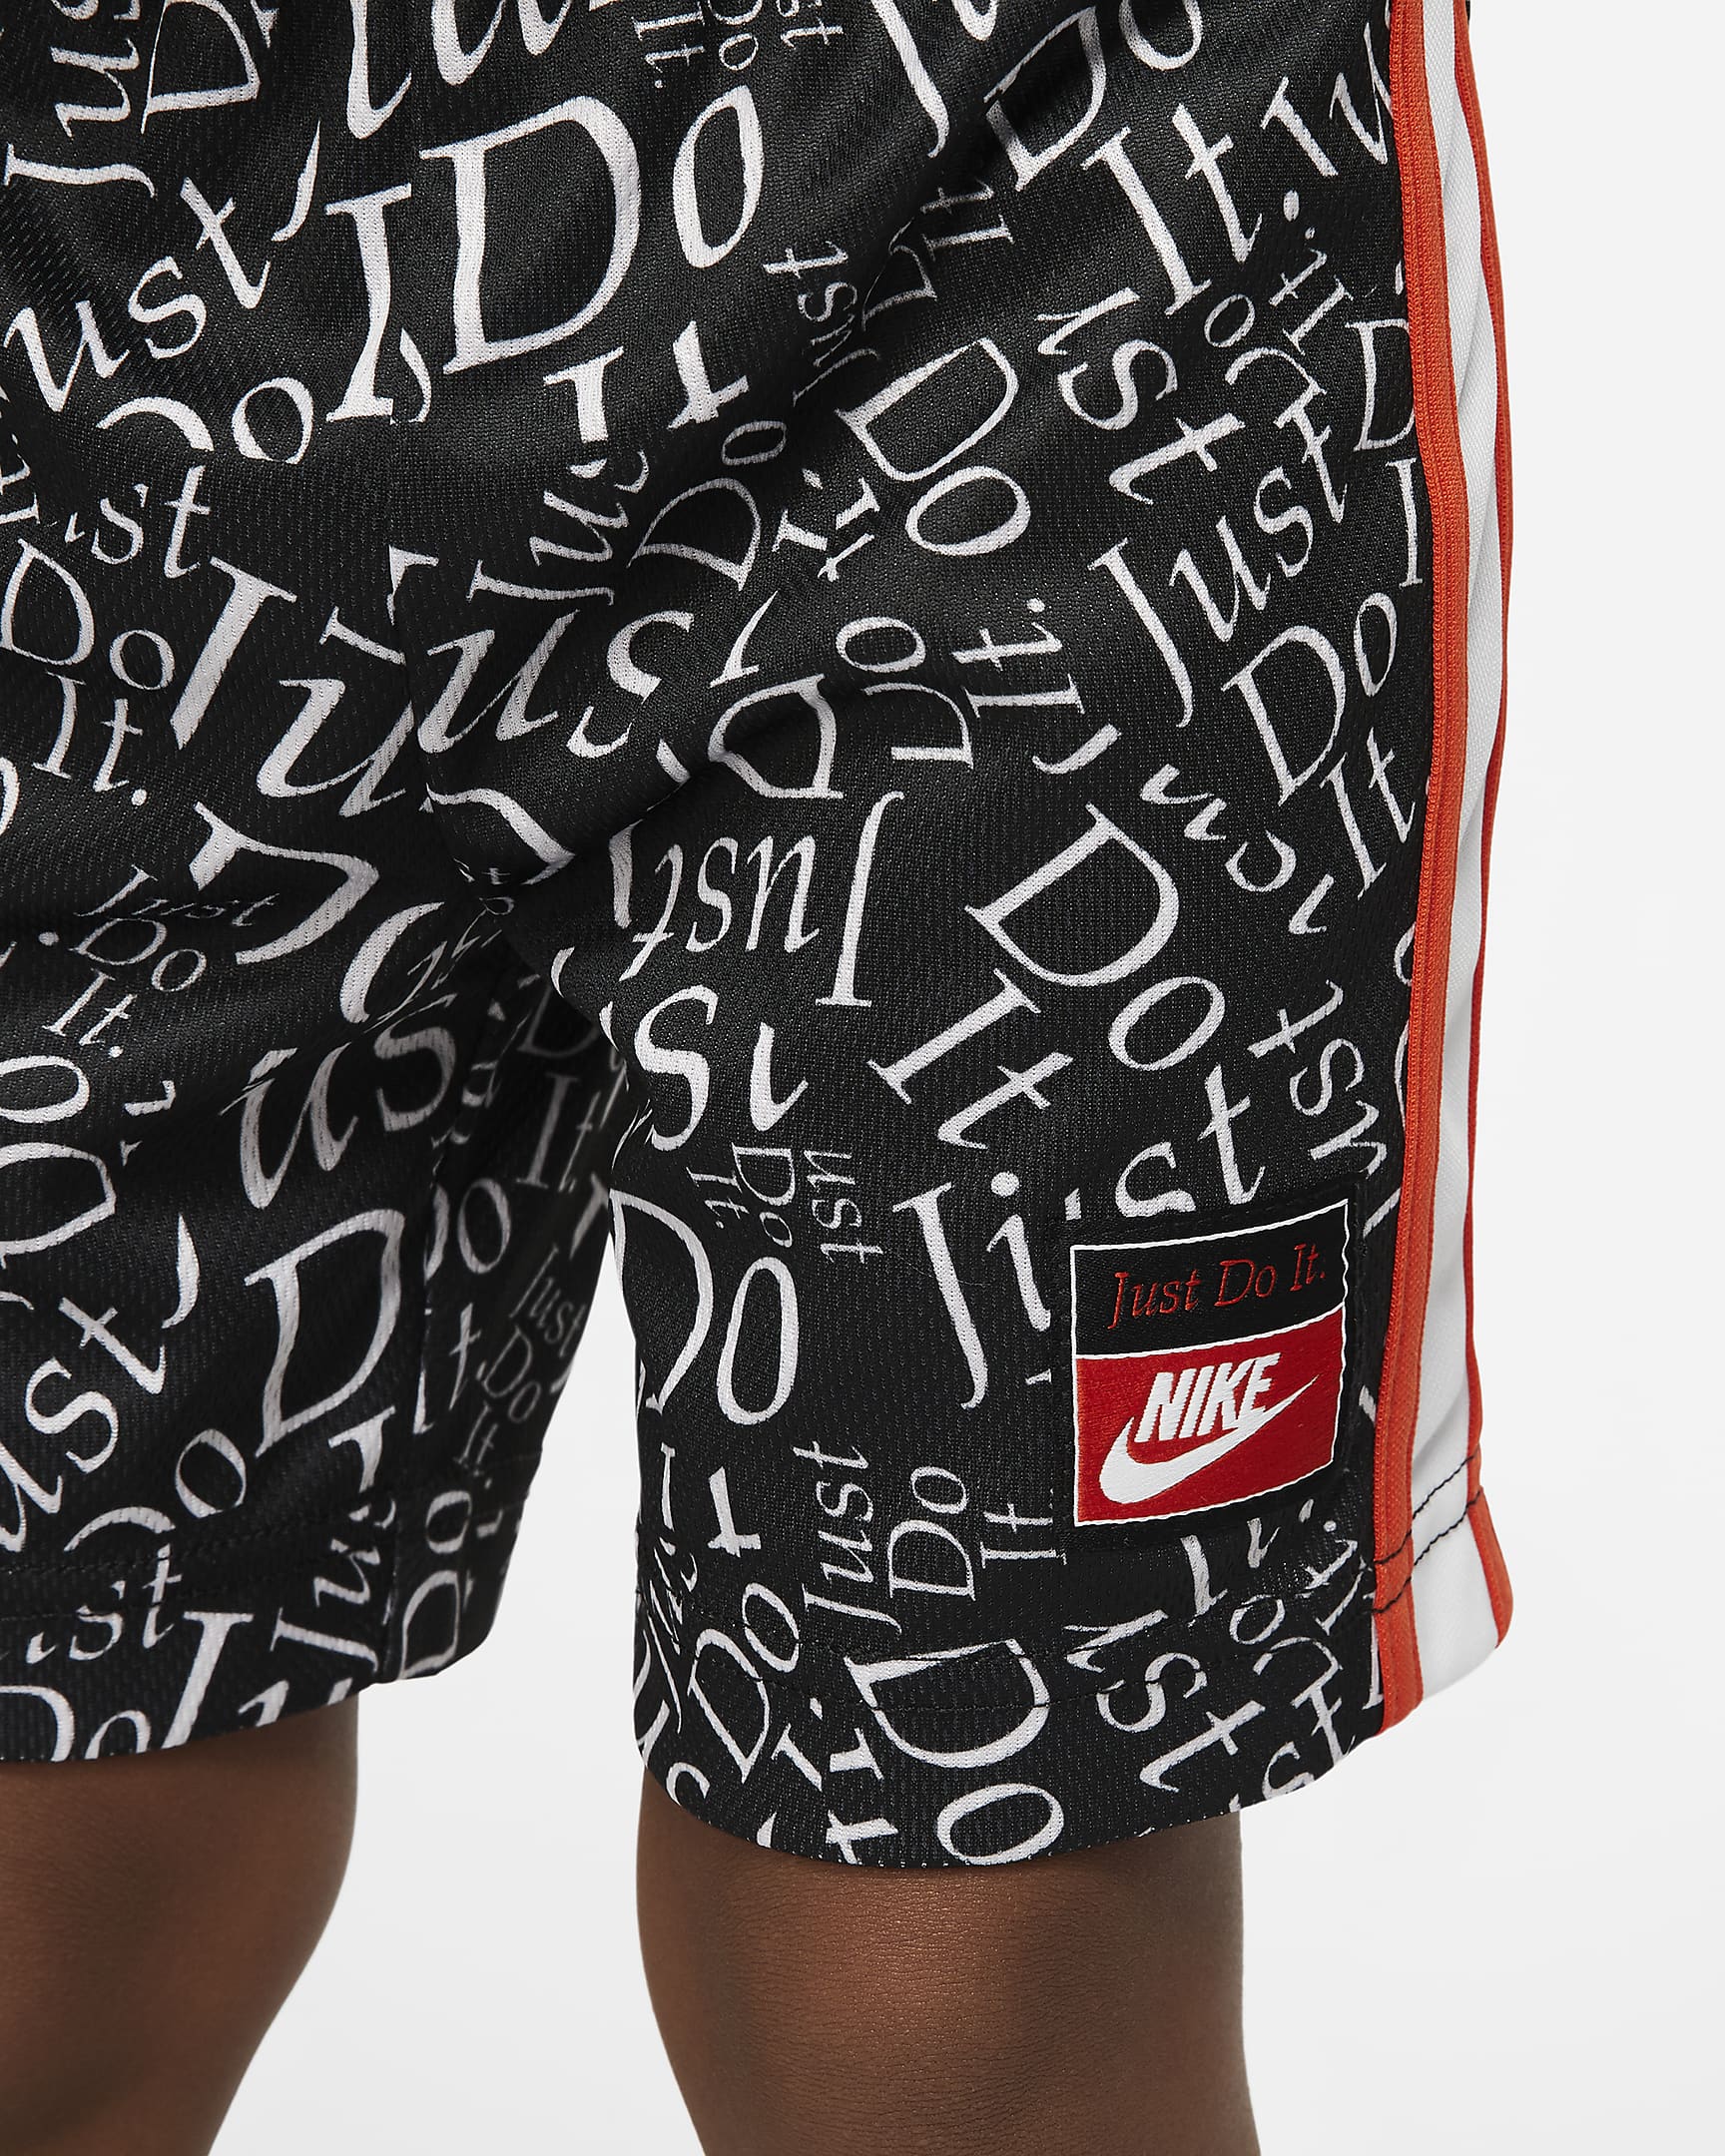 Conjunto de playera y shorts para bebé Nike. Nike.com